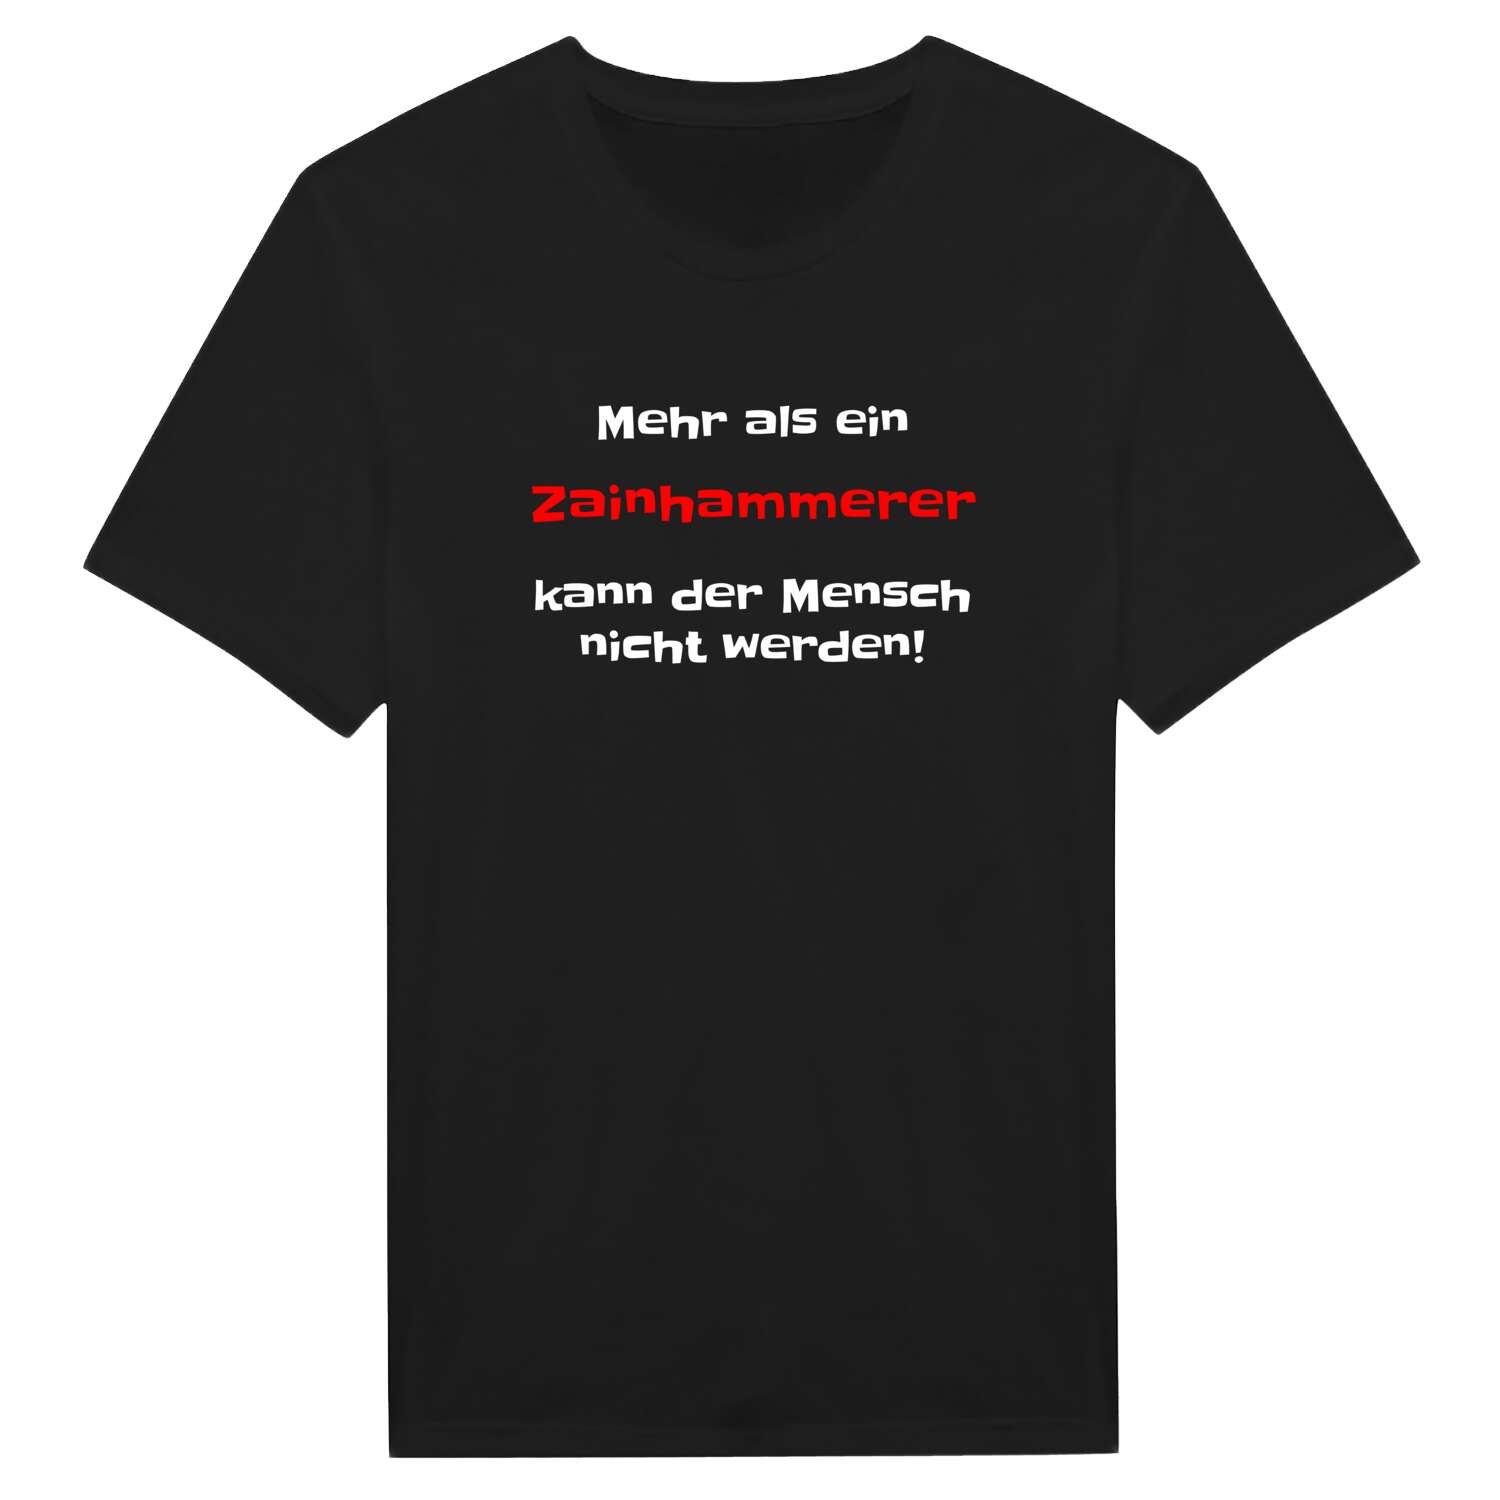 Zainhammer T-Shirt »Mehr als ein«